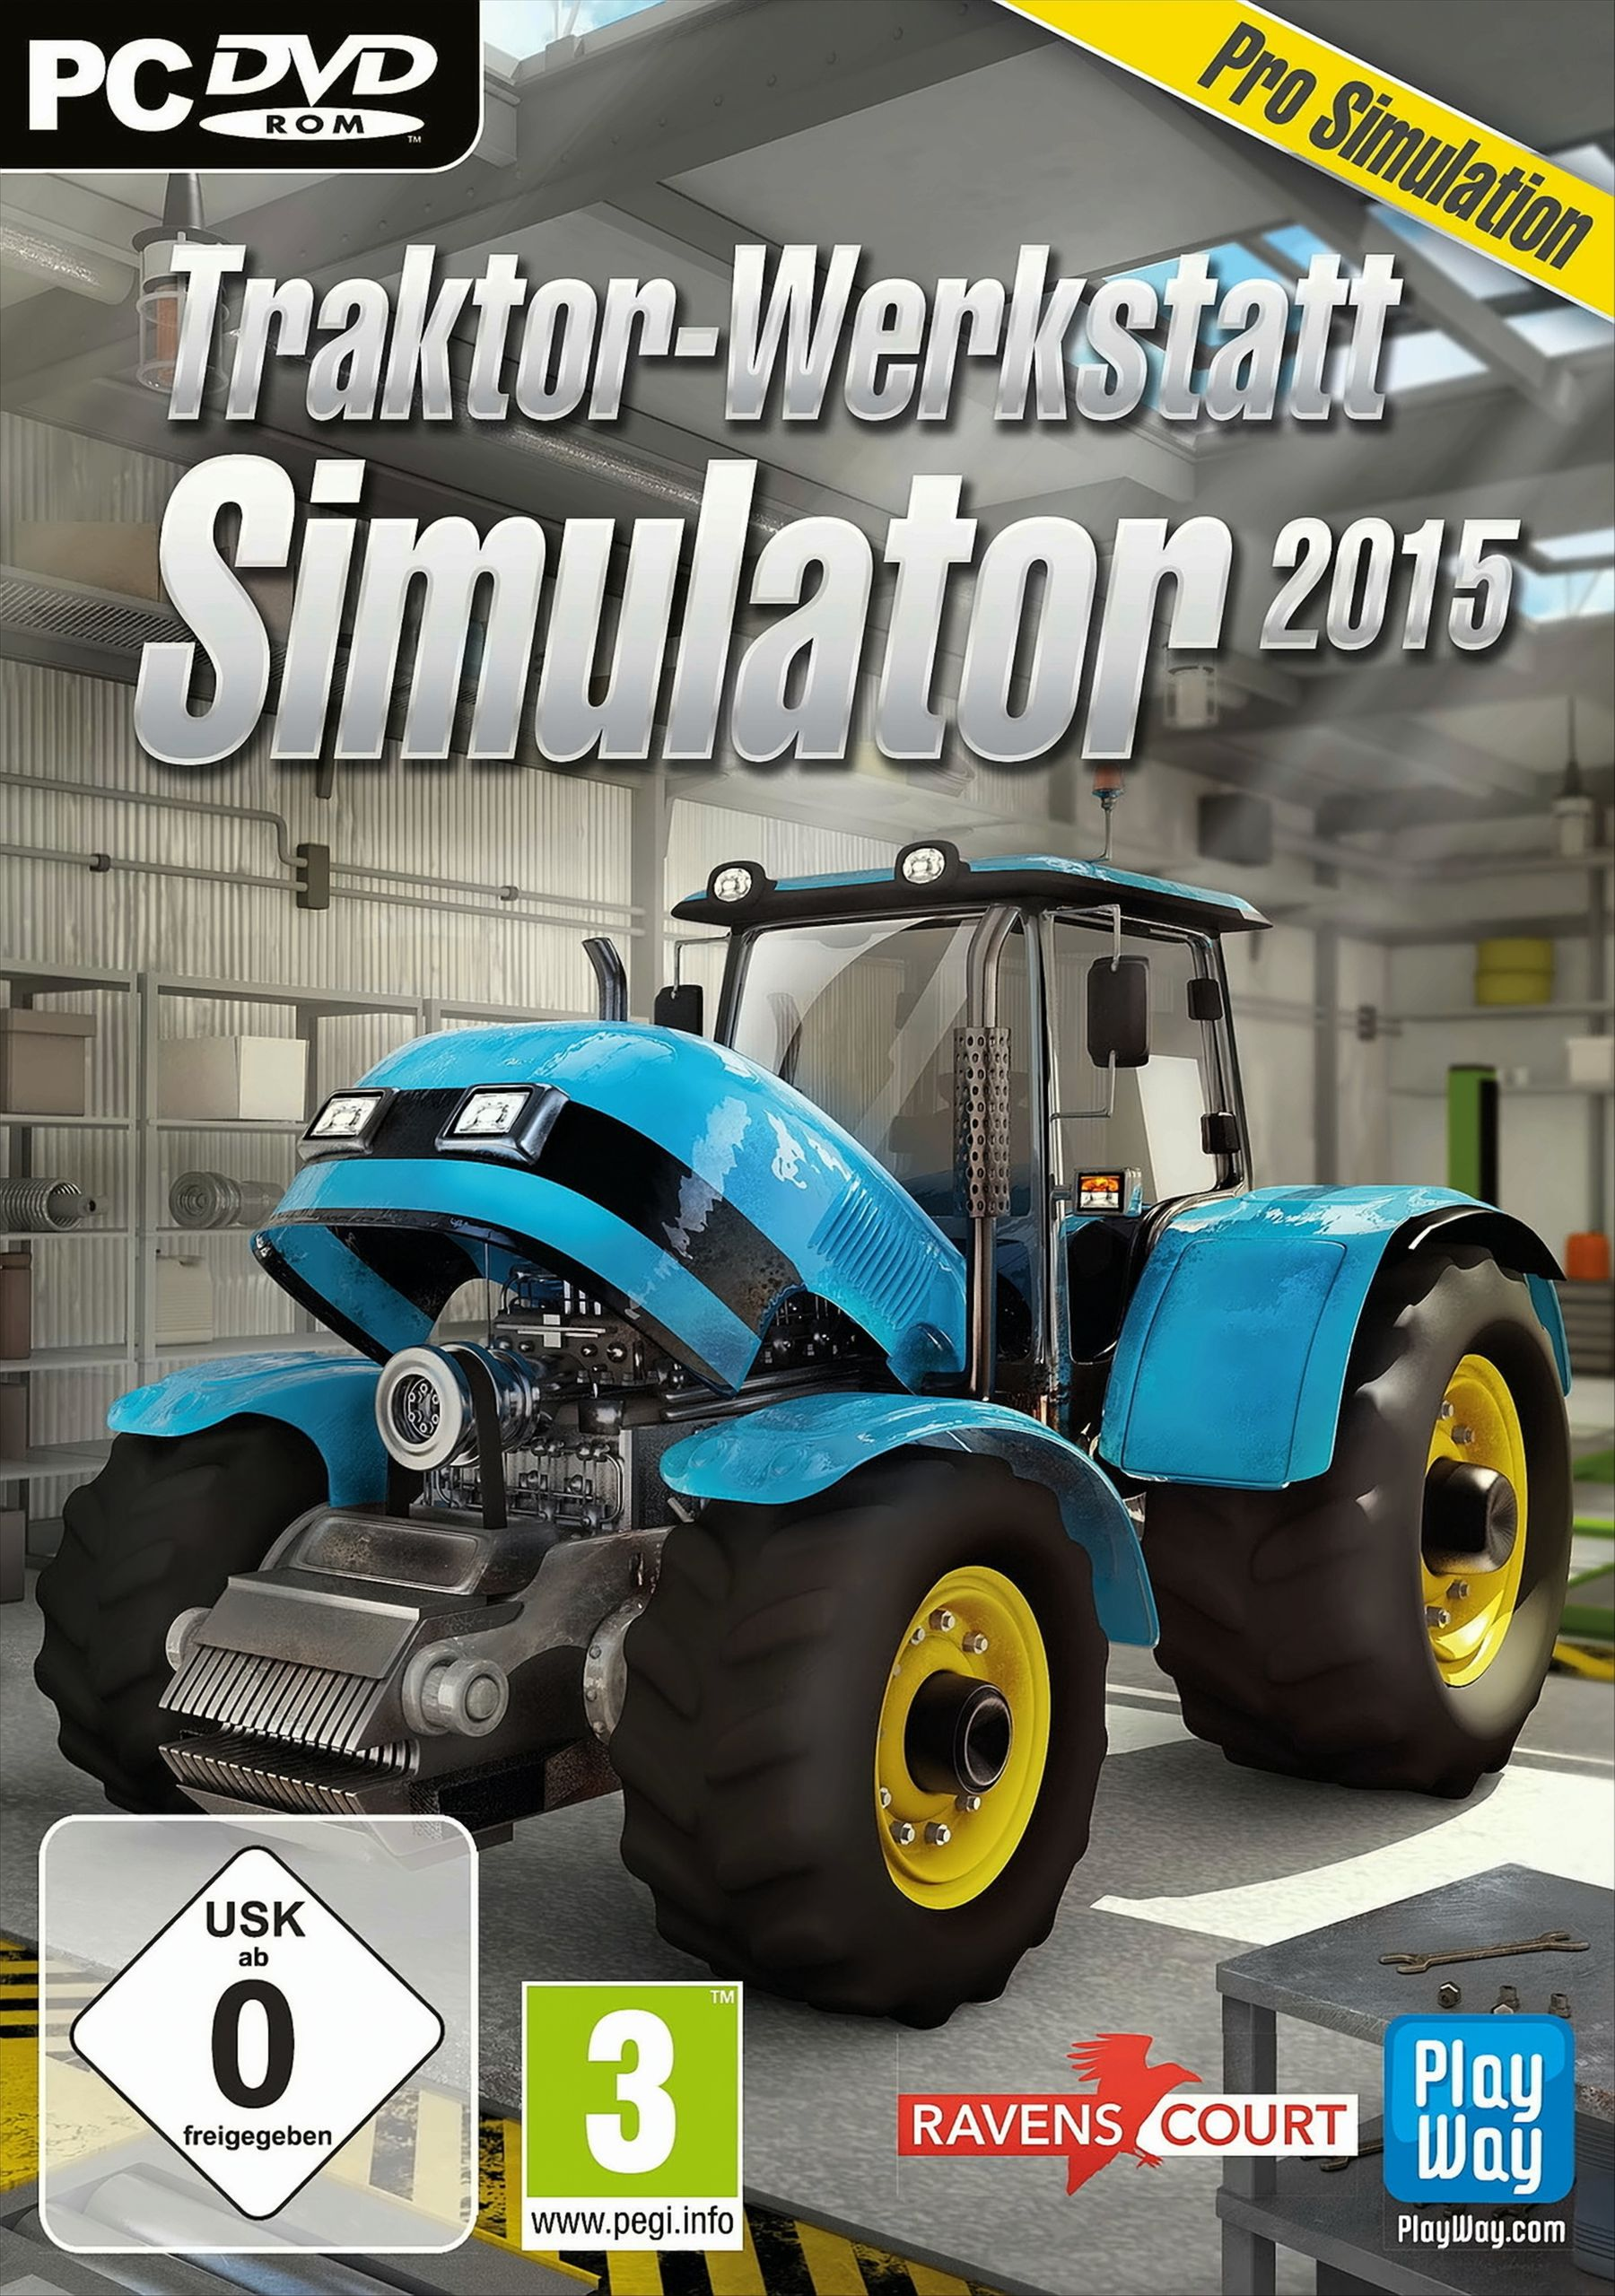 Traktor-Werkstatt Simulator 2015 - [PC